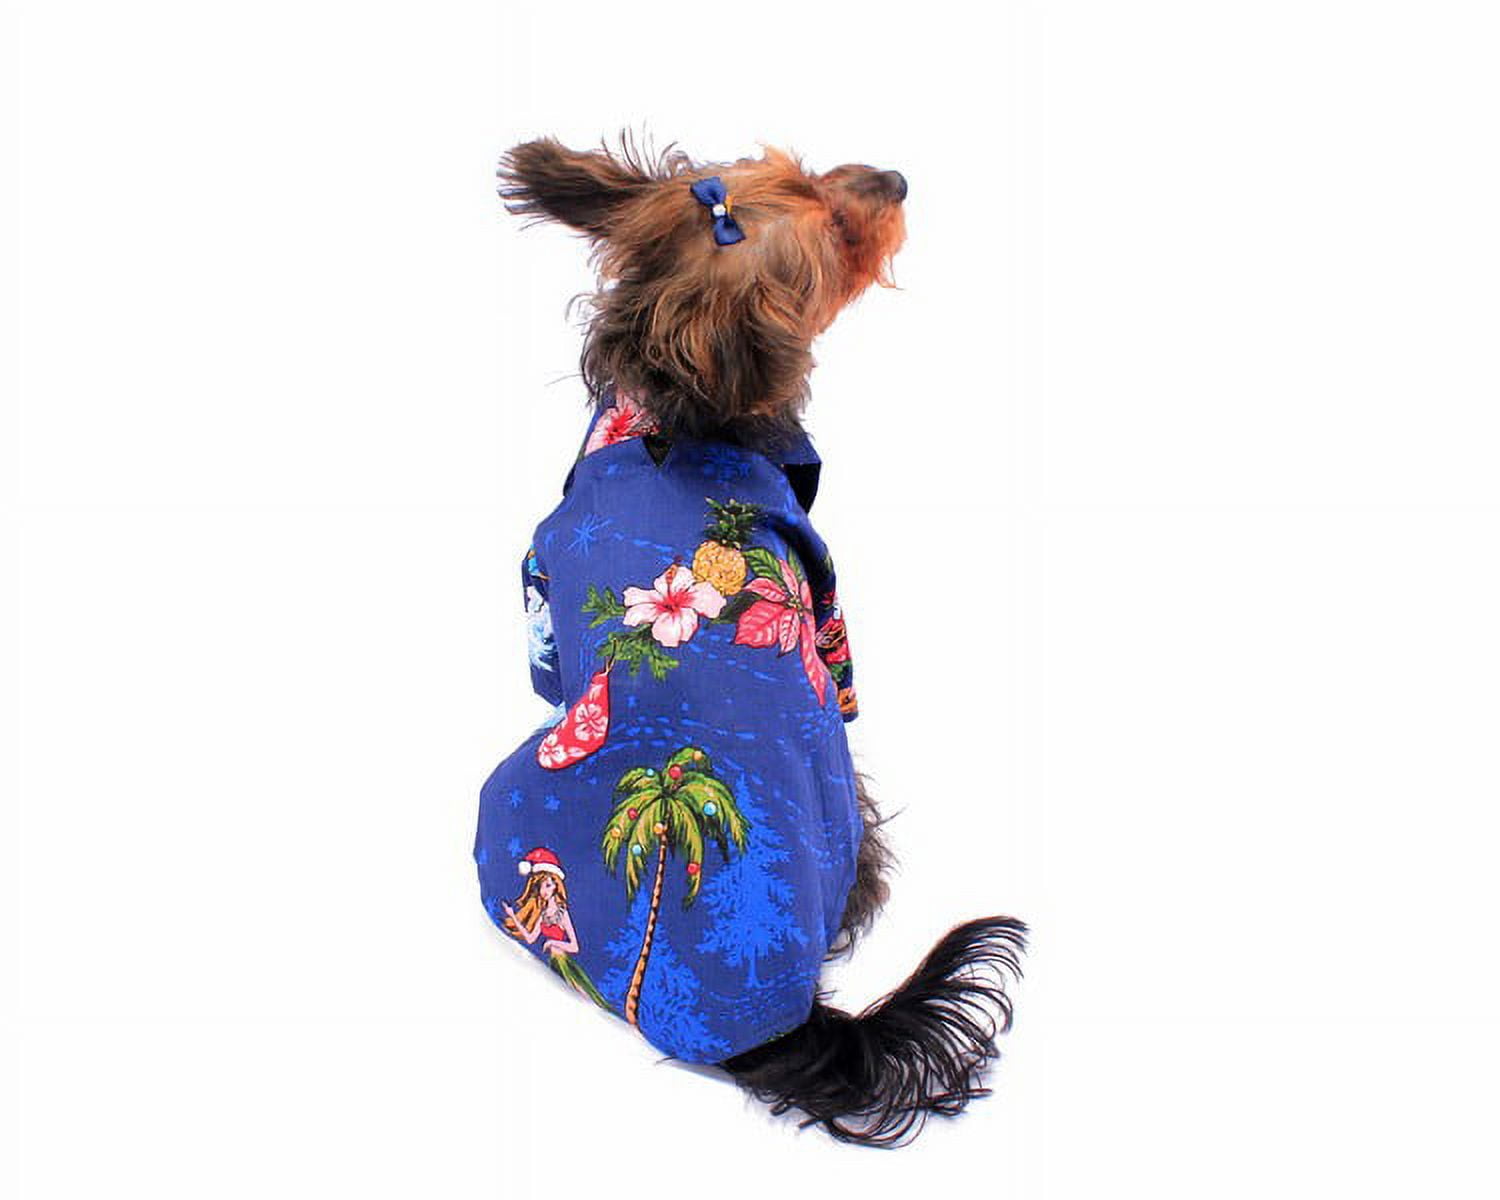 Red Paw Yorkshire Terrier Jacket • Yorkies Gram